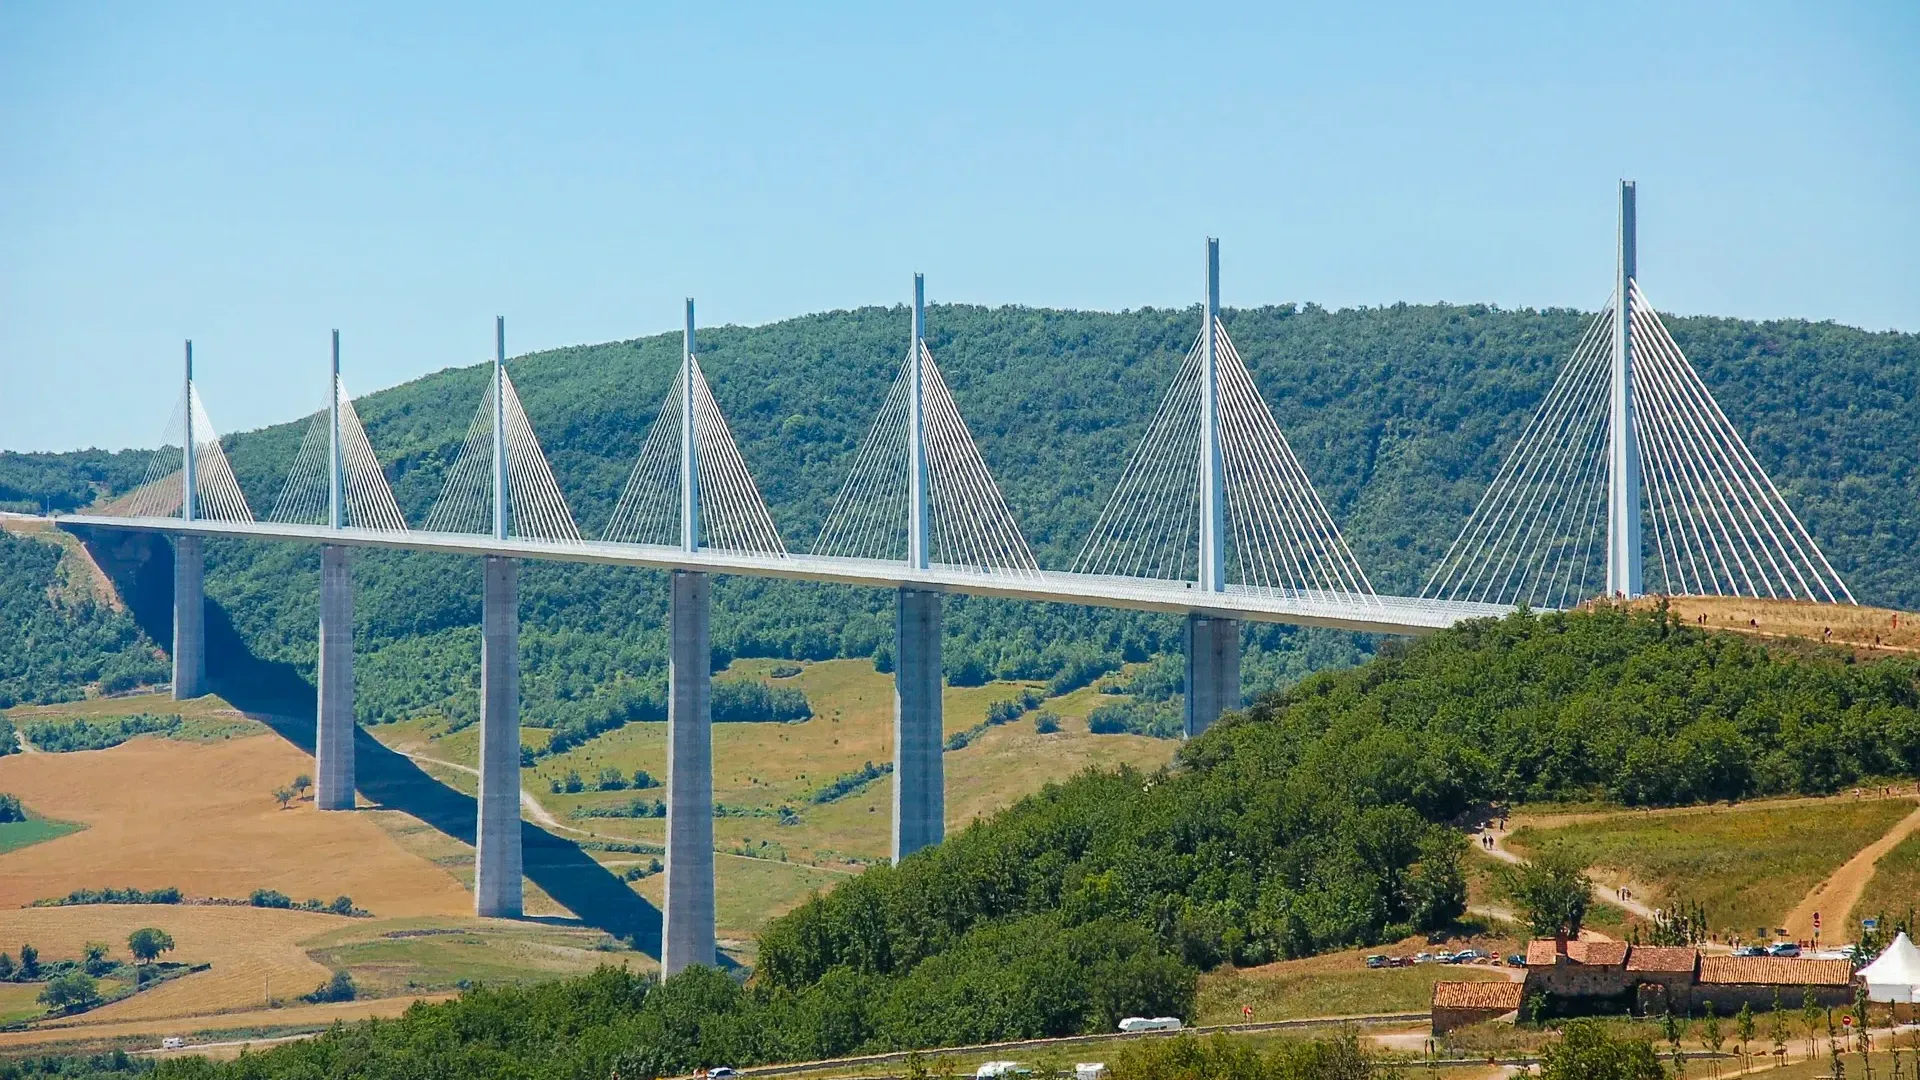 Het viaduct de Millau en Aveyron is een brug met 300 m hoge betonnen pylonen en daaroverheen stalen brugliggers over een groene vallei